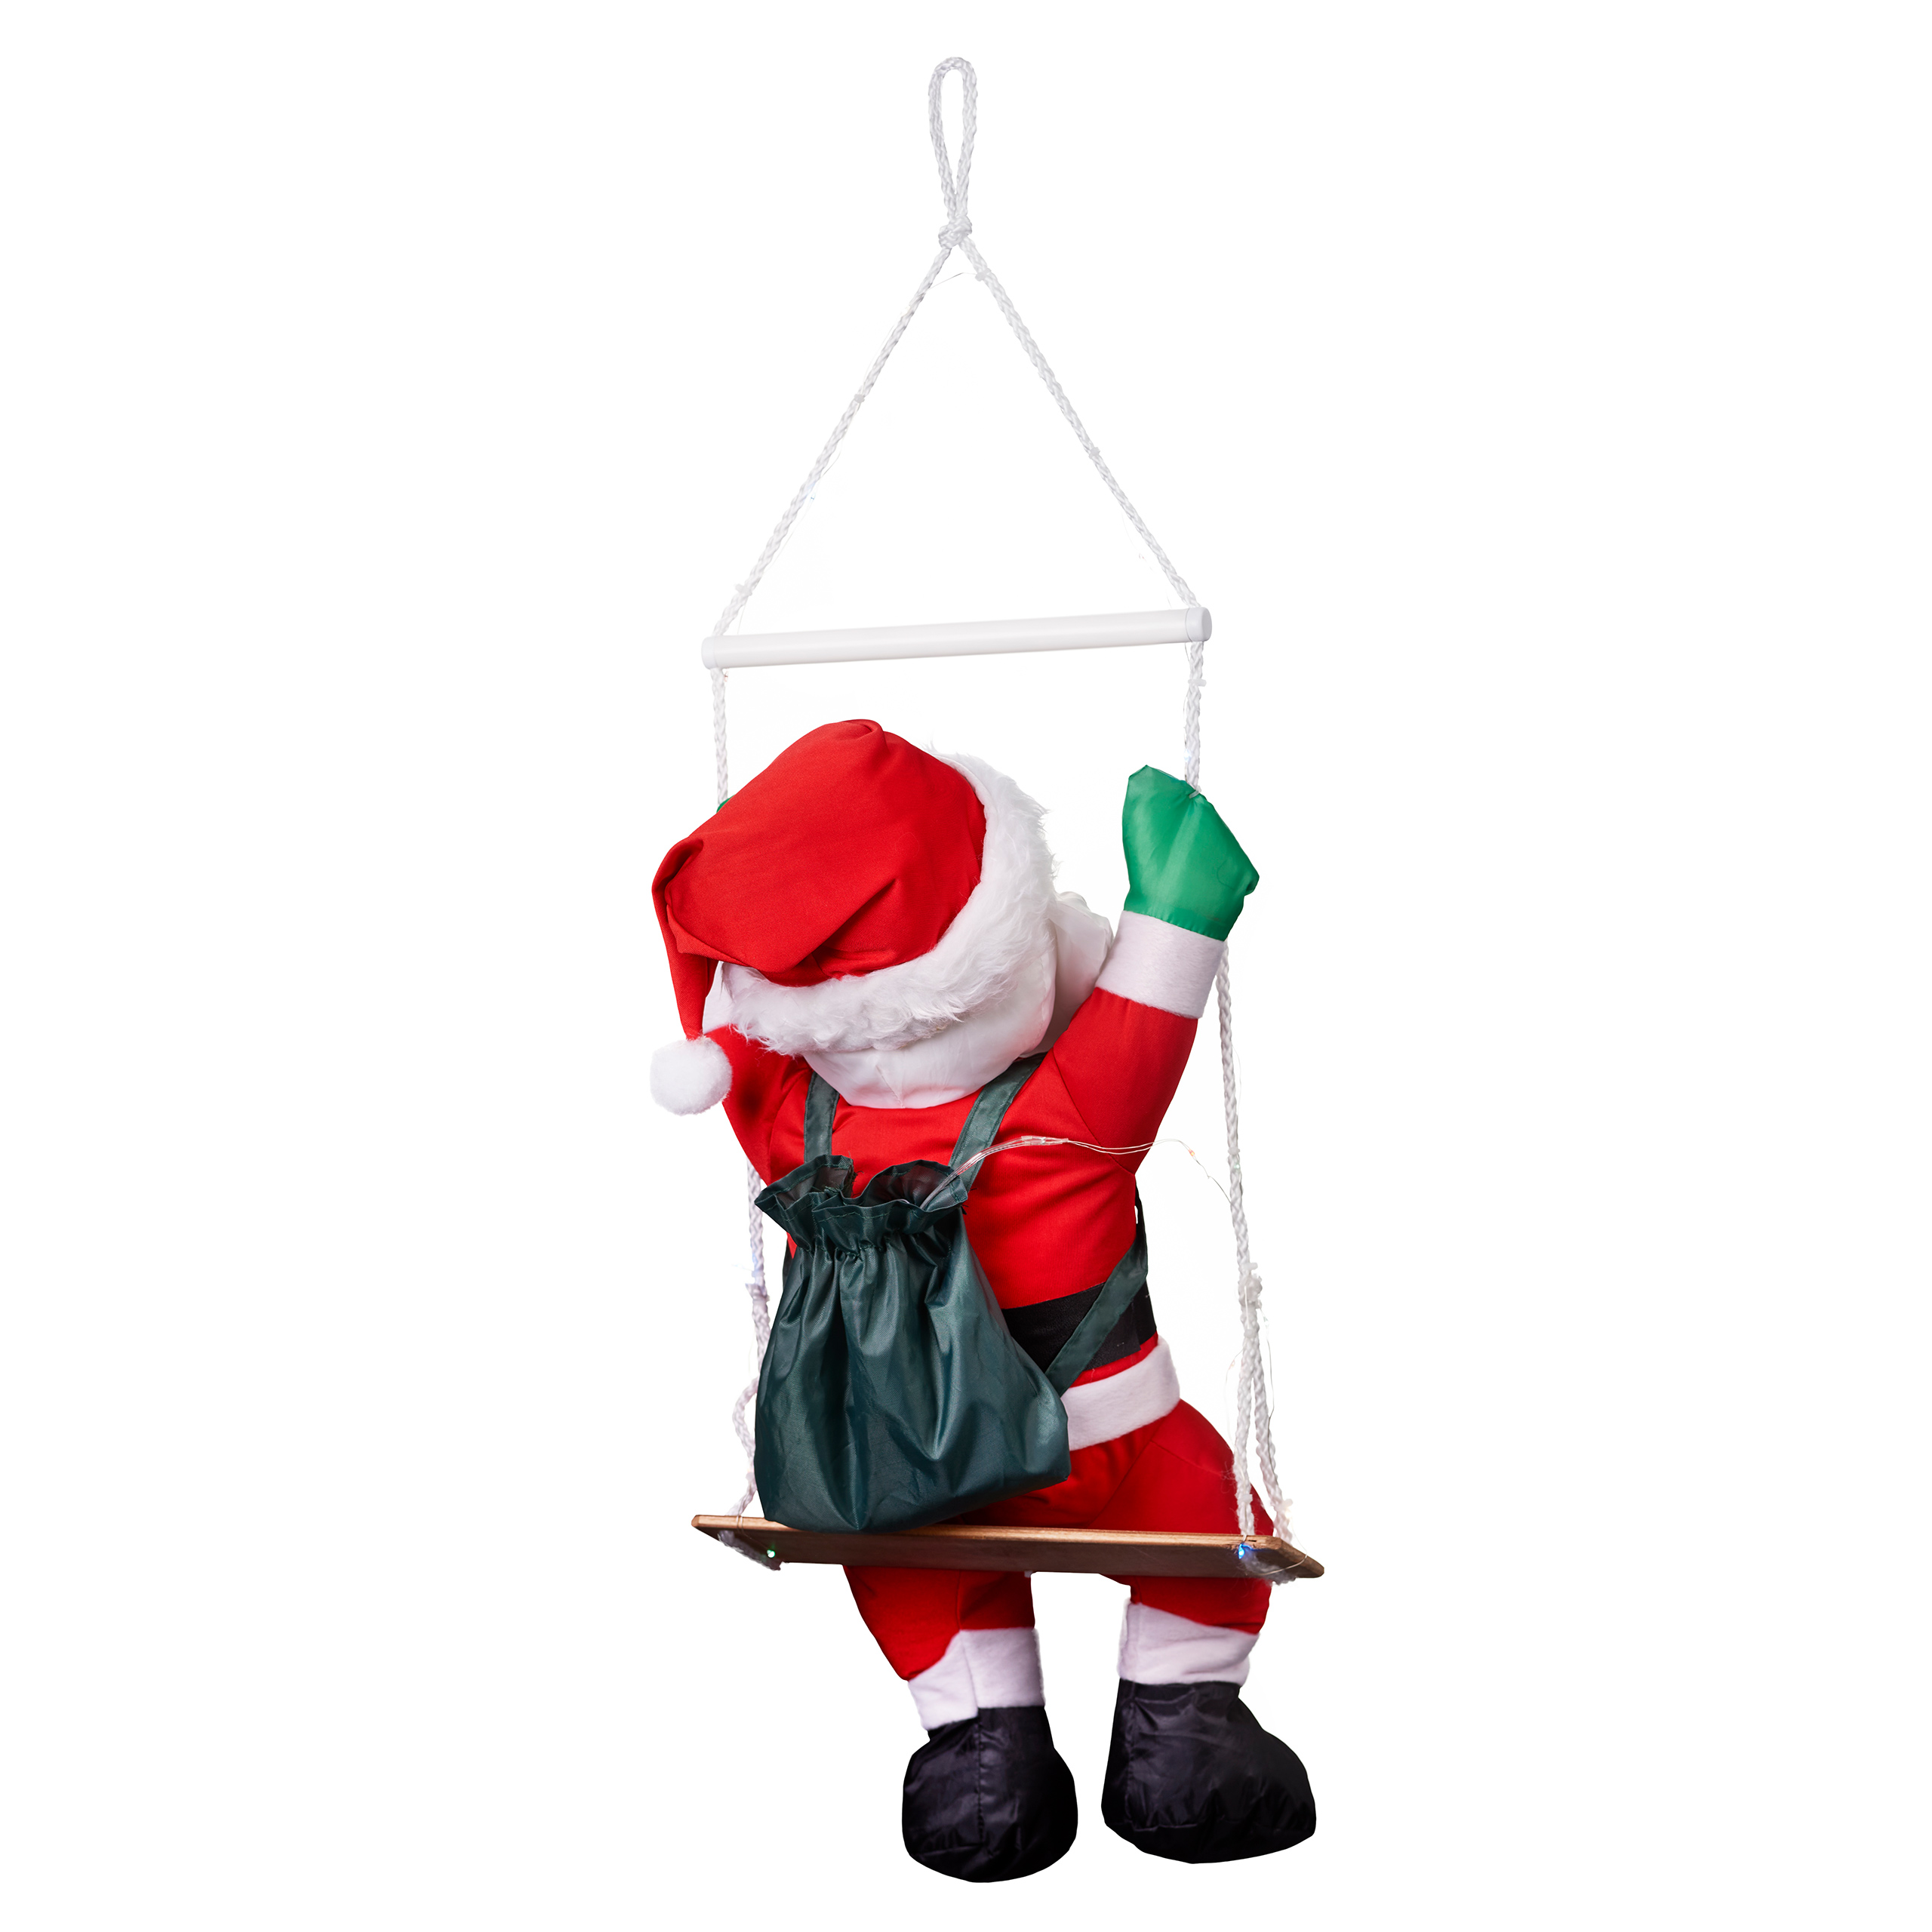 Raburg Weihnachtsmann auf Schaukel mit buntem LED-Licht, weiche XL Deko-Figur für Weihnachten